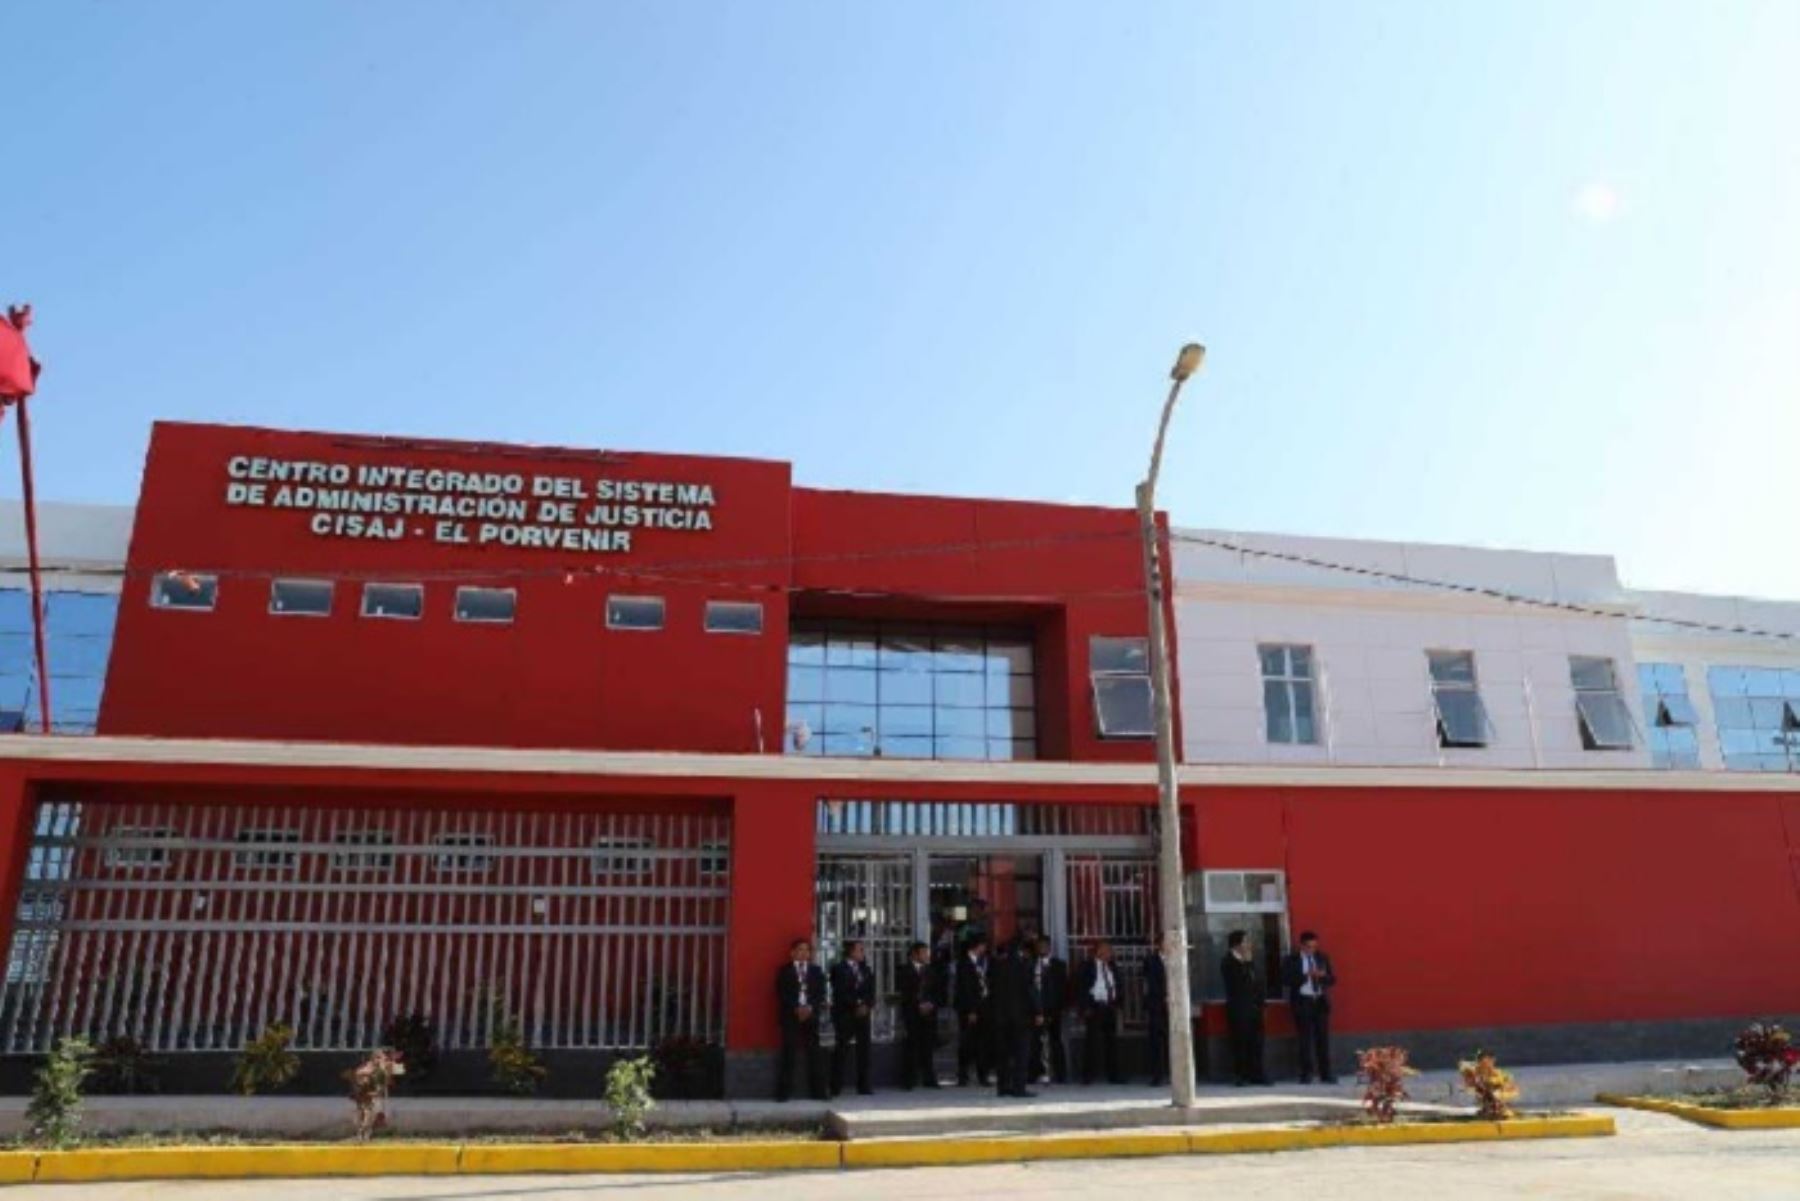 Una población de 185, 000 personas que vive en el populoso distrito de El Porvenir, se beneficiarán con el Centro Integrado de Servicio de Administración de Justicia (CISAJ), inaugurado hoy en Trujillo, región La Libertad.